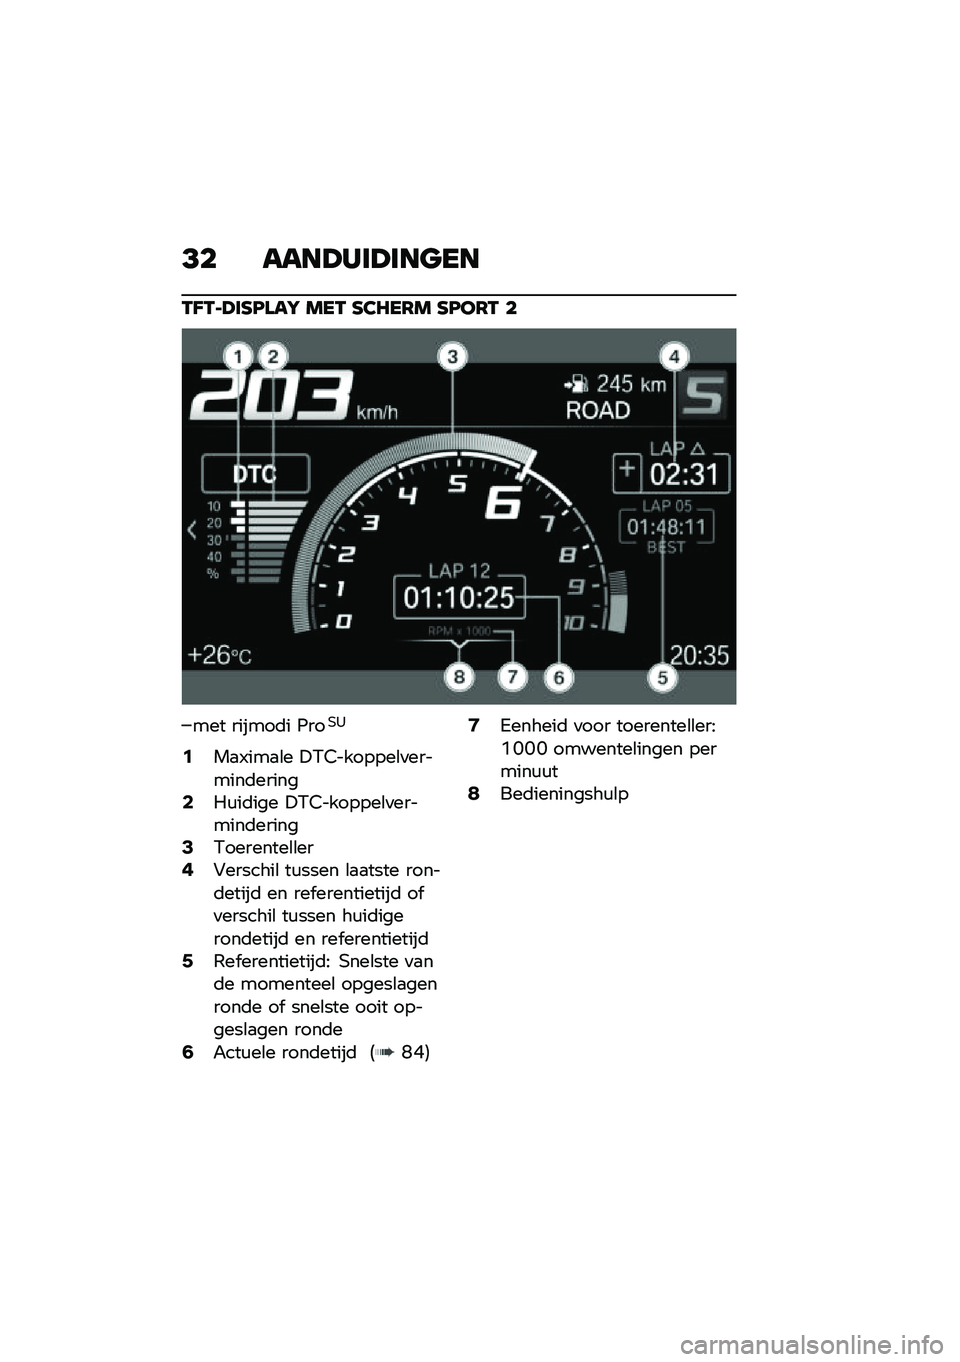 BMW MOTORRAD F 900 R 2020  Handleiding (in Dutch) �<� ����>�*�	�>�	����
�-�A�-��>�	�C�B���I ���- �C�2�7��6� �C�B��6�- �
��� ������	� �2���,�1
�2��
�/���
�\b� �!�0�5�������\b�
�������	������4��\f��	�